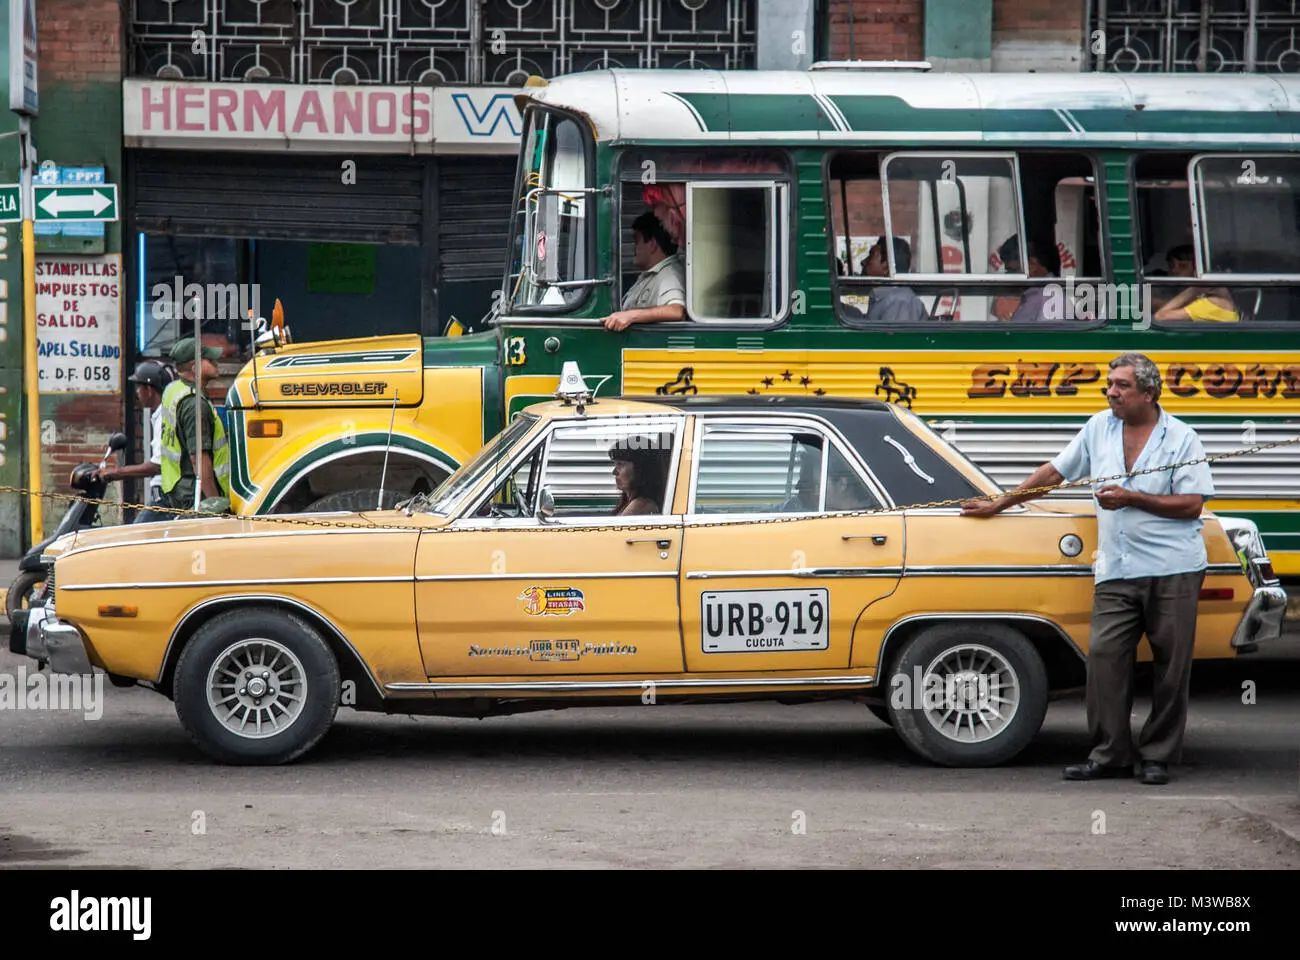 taxi de venezuela - Qué es un Ridery